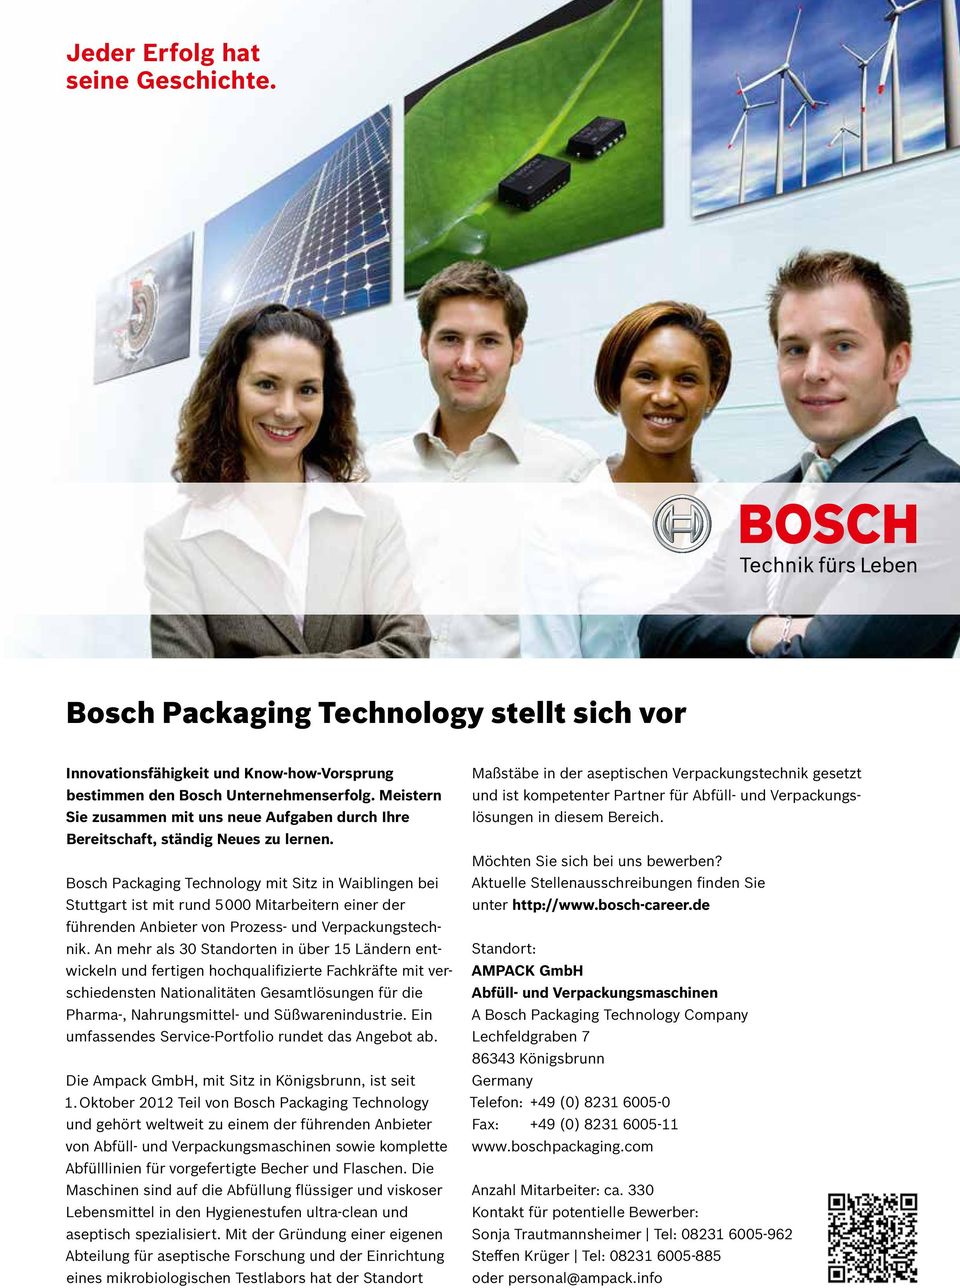 Bosch Packaging Technology mit Sitz in Waiblingen bei Stuttgart ist mit rund 5000 Mitarbeitern einer der führenden Anbieter von Prozess- und Verpackungstechnik.